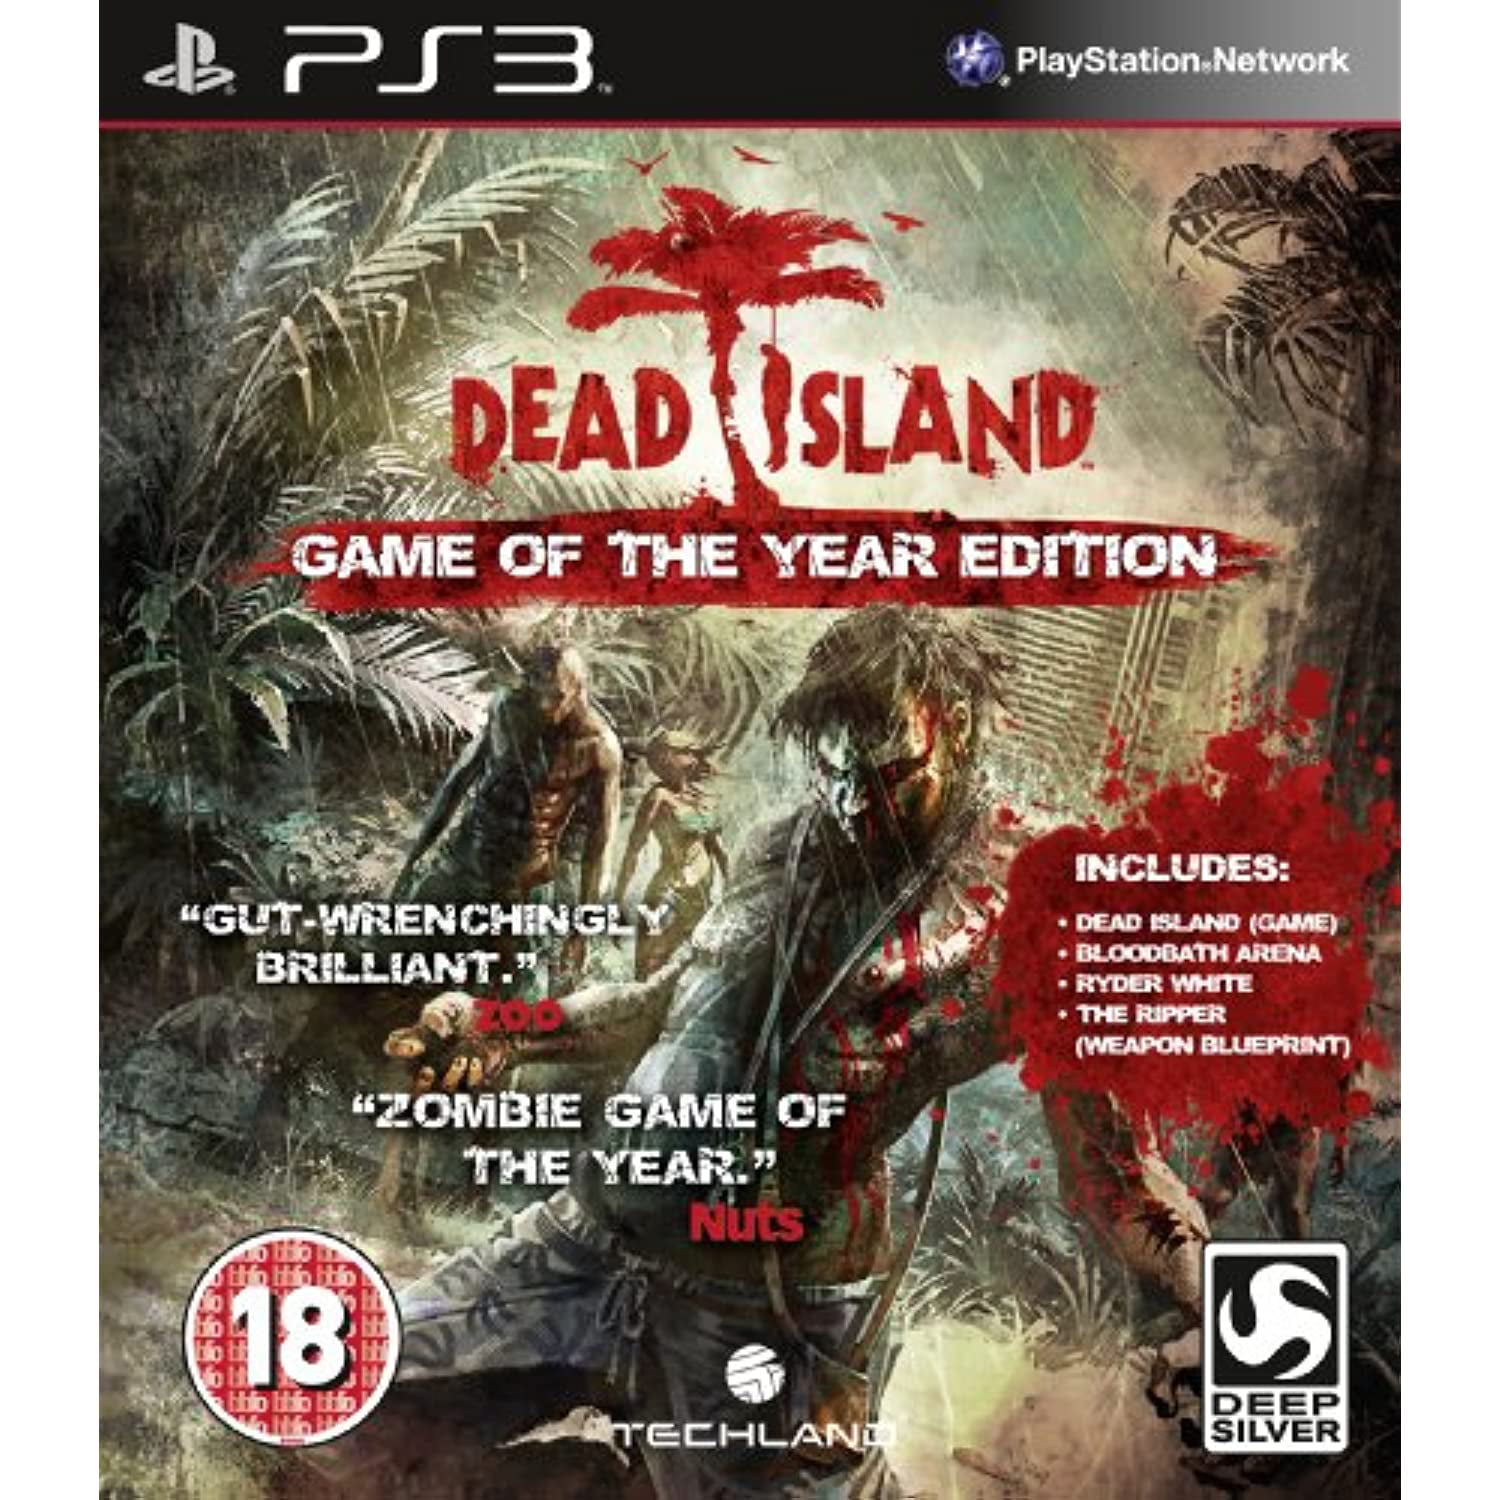 Дед исланд 2 купить. Dead Island коллекционное издание. Dead Island 2 коллекционное издание. Коллекционное издание дед Айленд 2. Dead Island Xbox коллекционное издание.